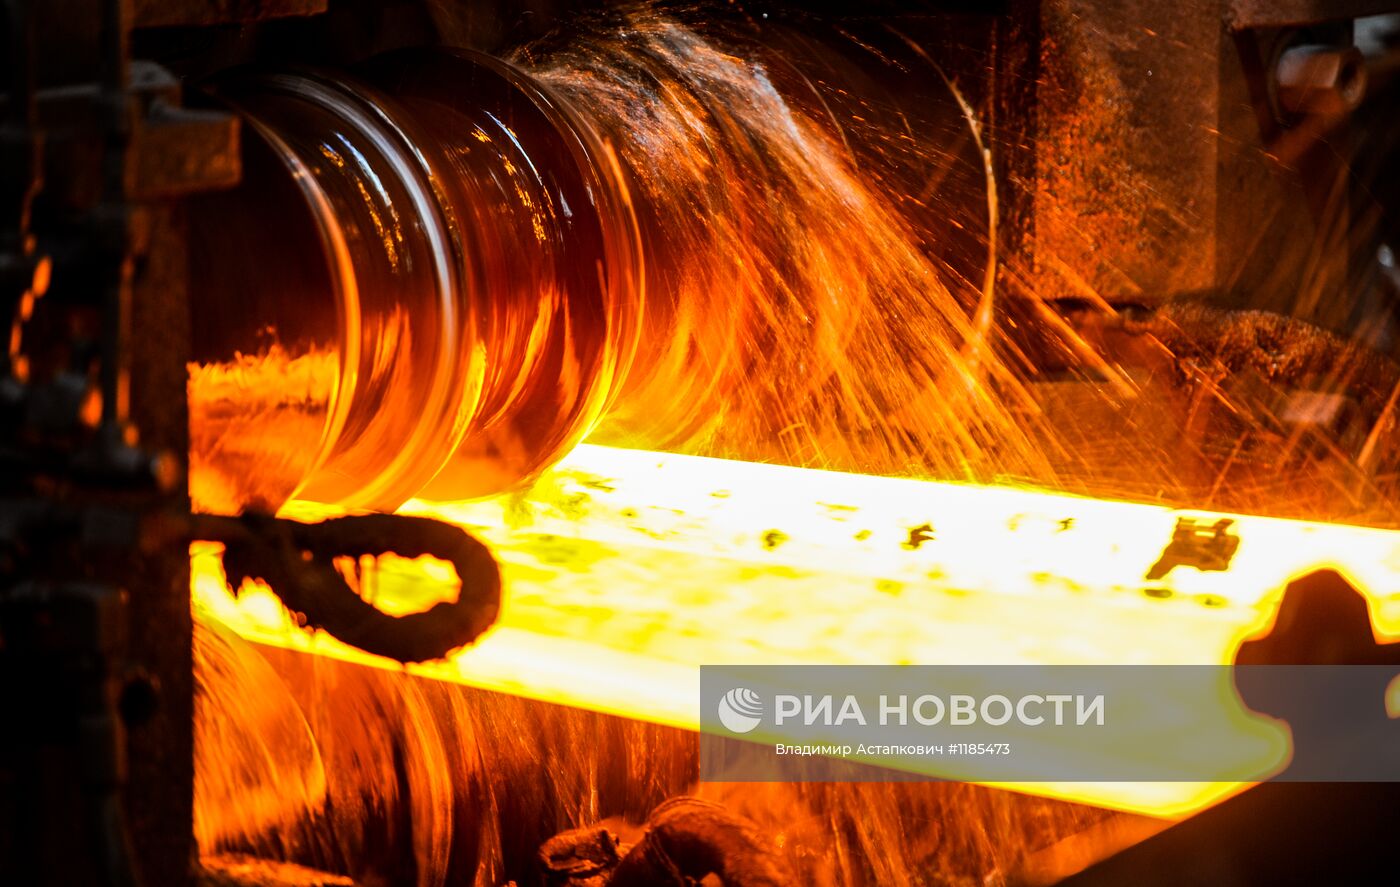 Работа Череповецкого металлургического комбината